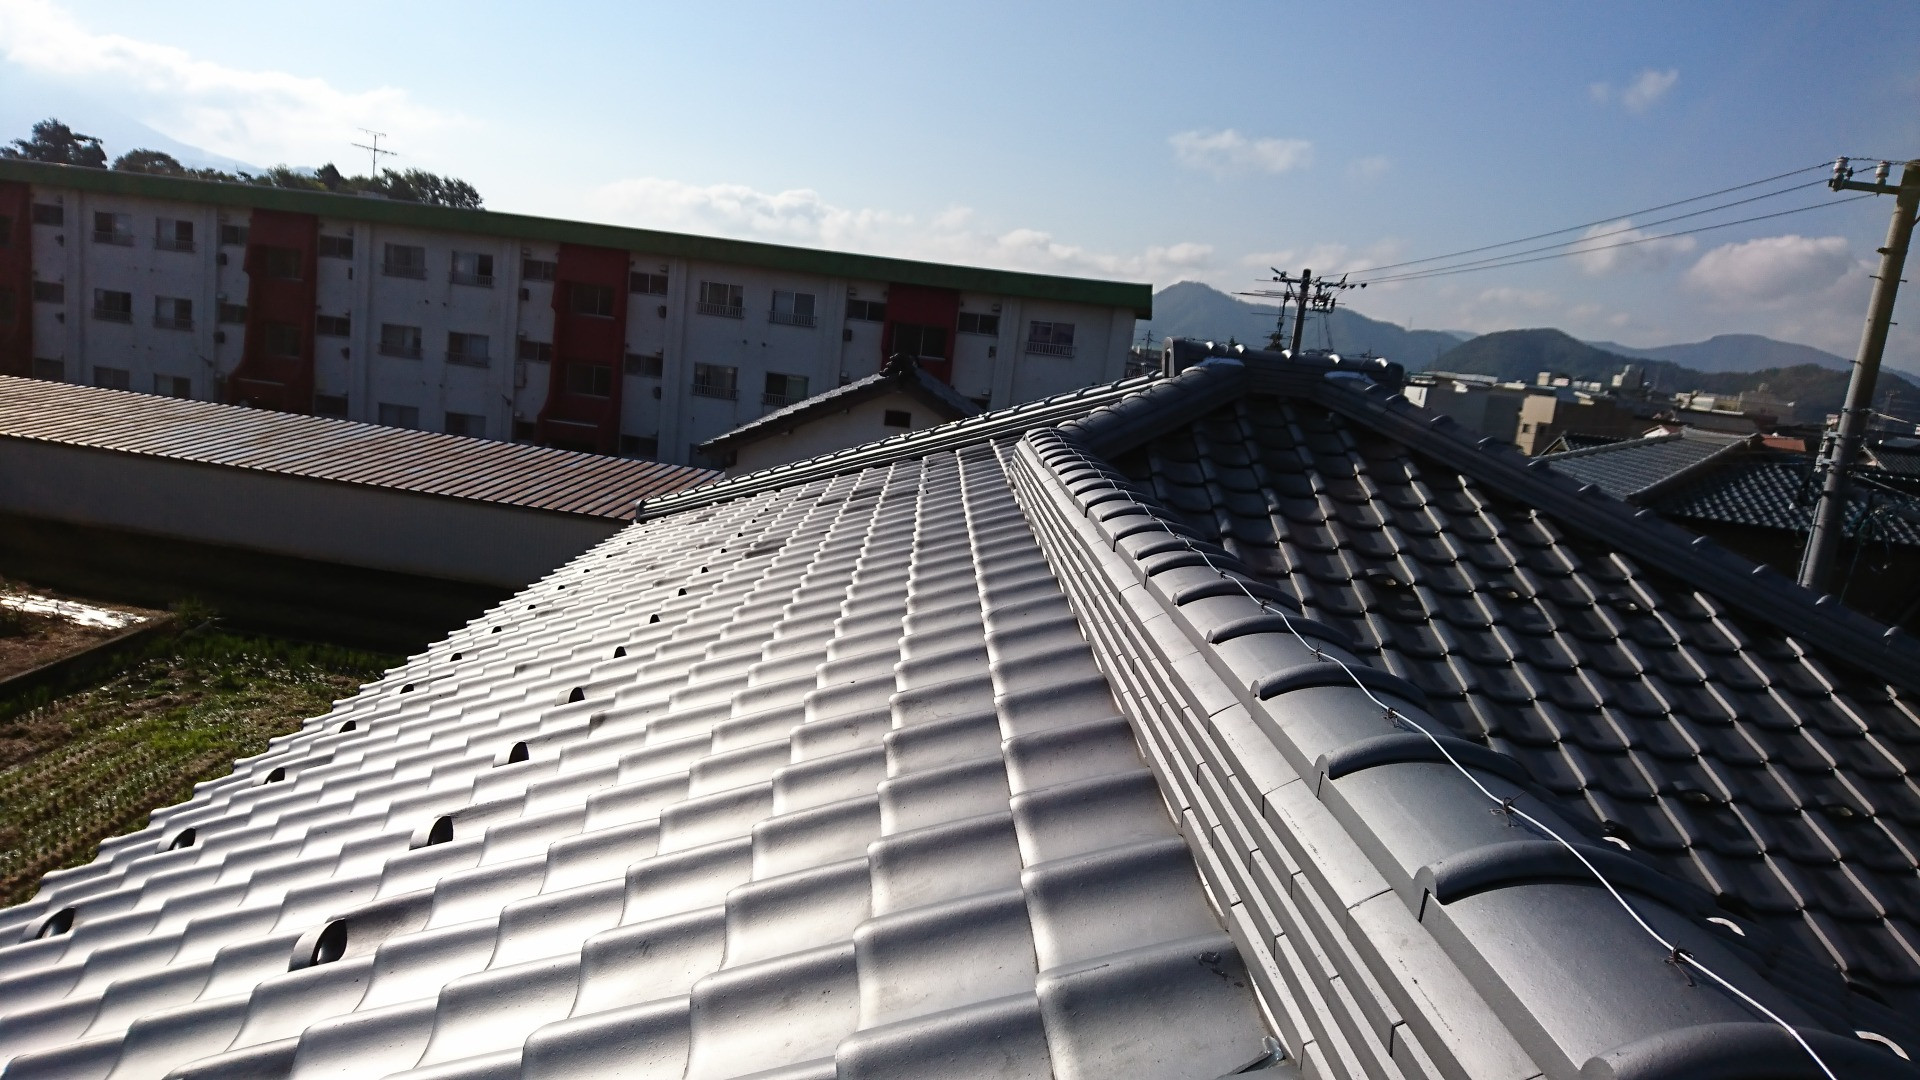 鯖江市で屋根瓦の葺き替え工事に来てます。